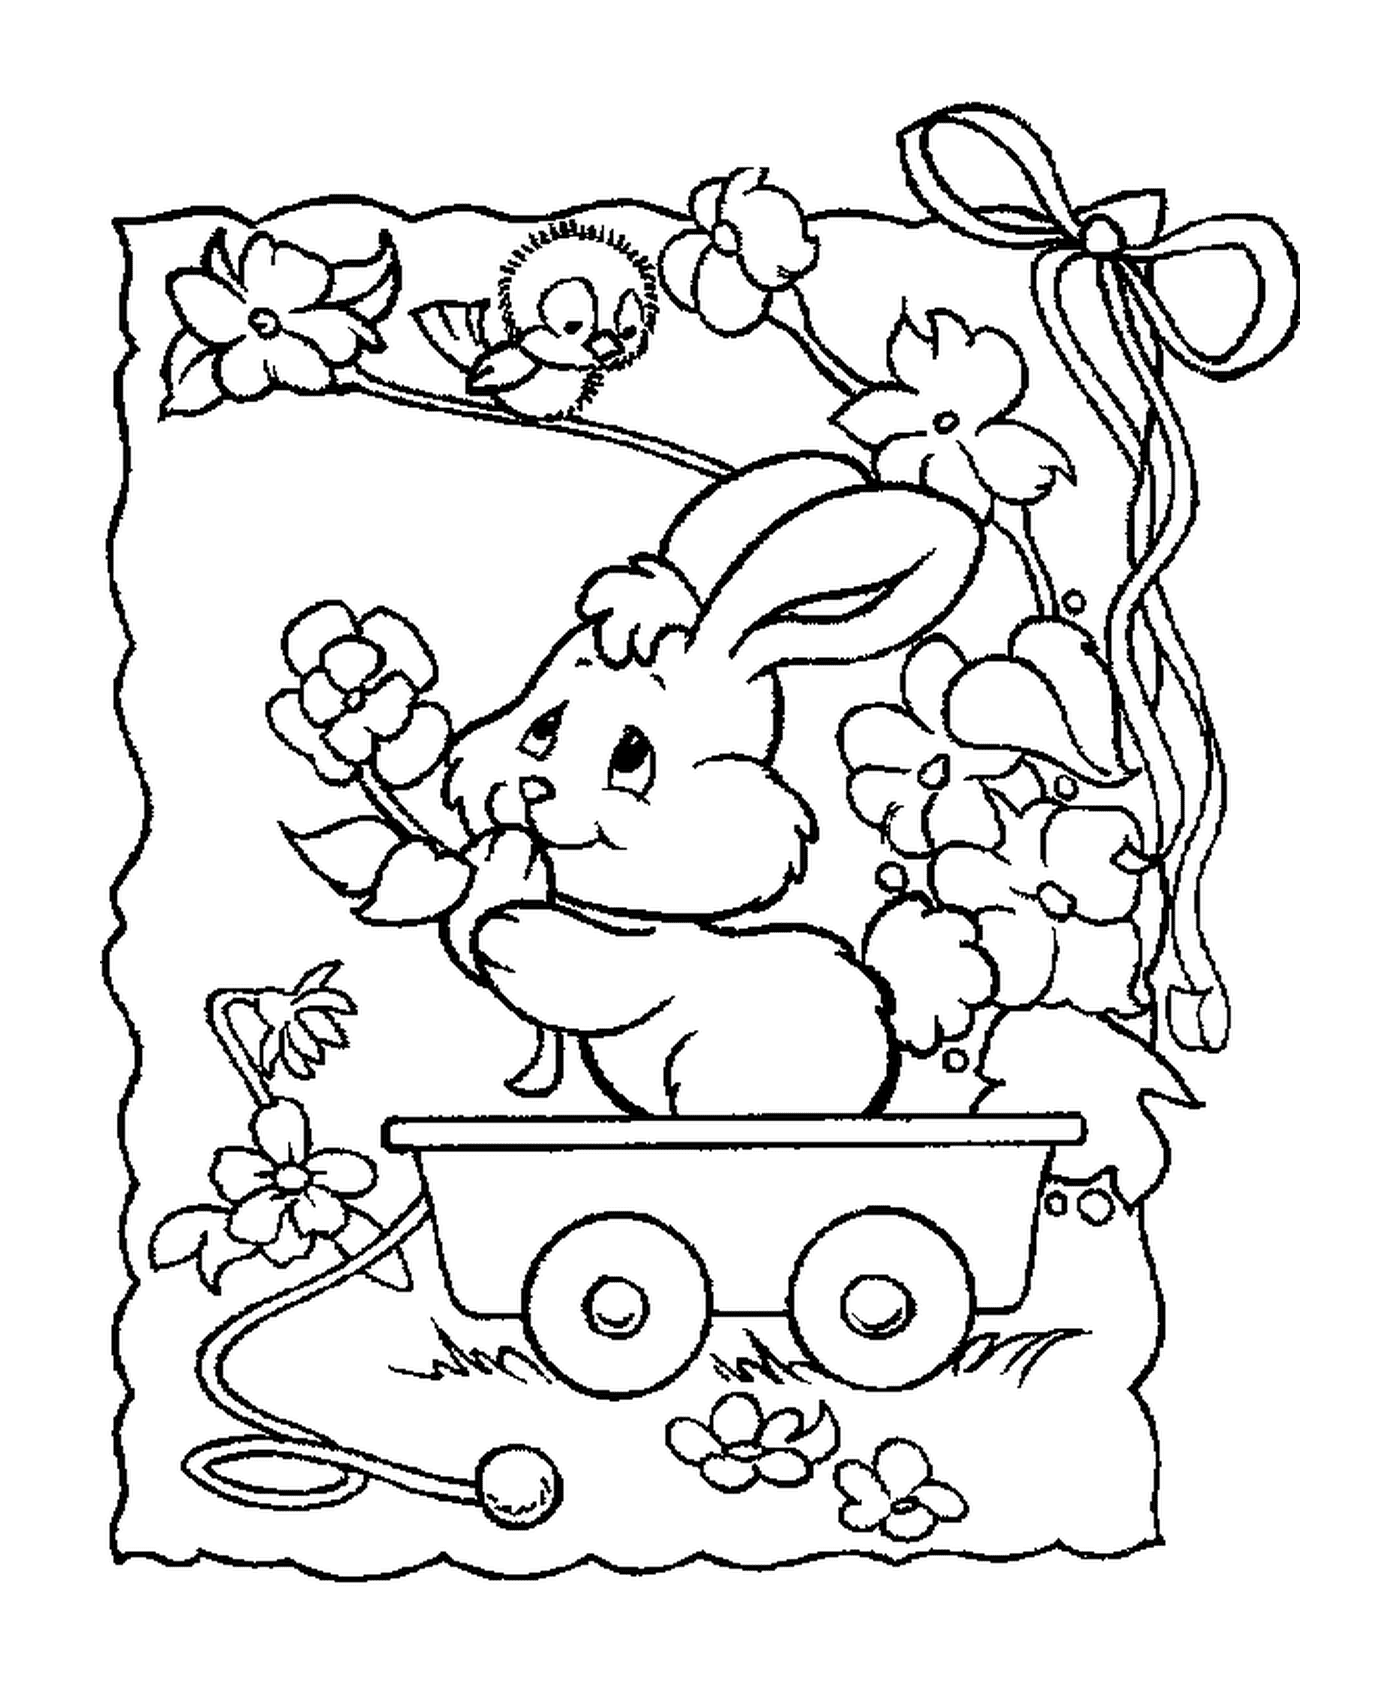  Un coniglio seduto in un carro 